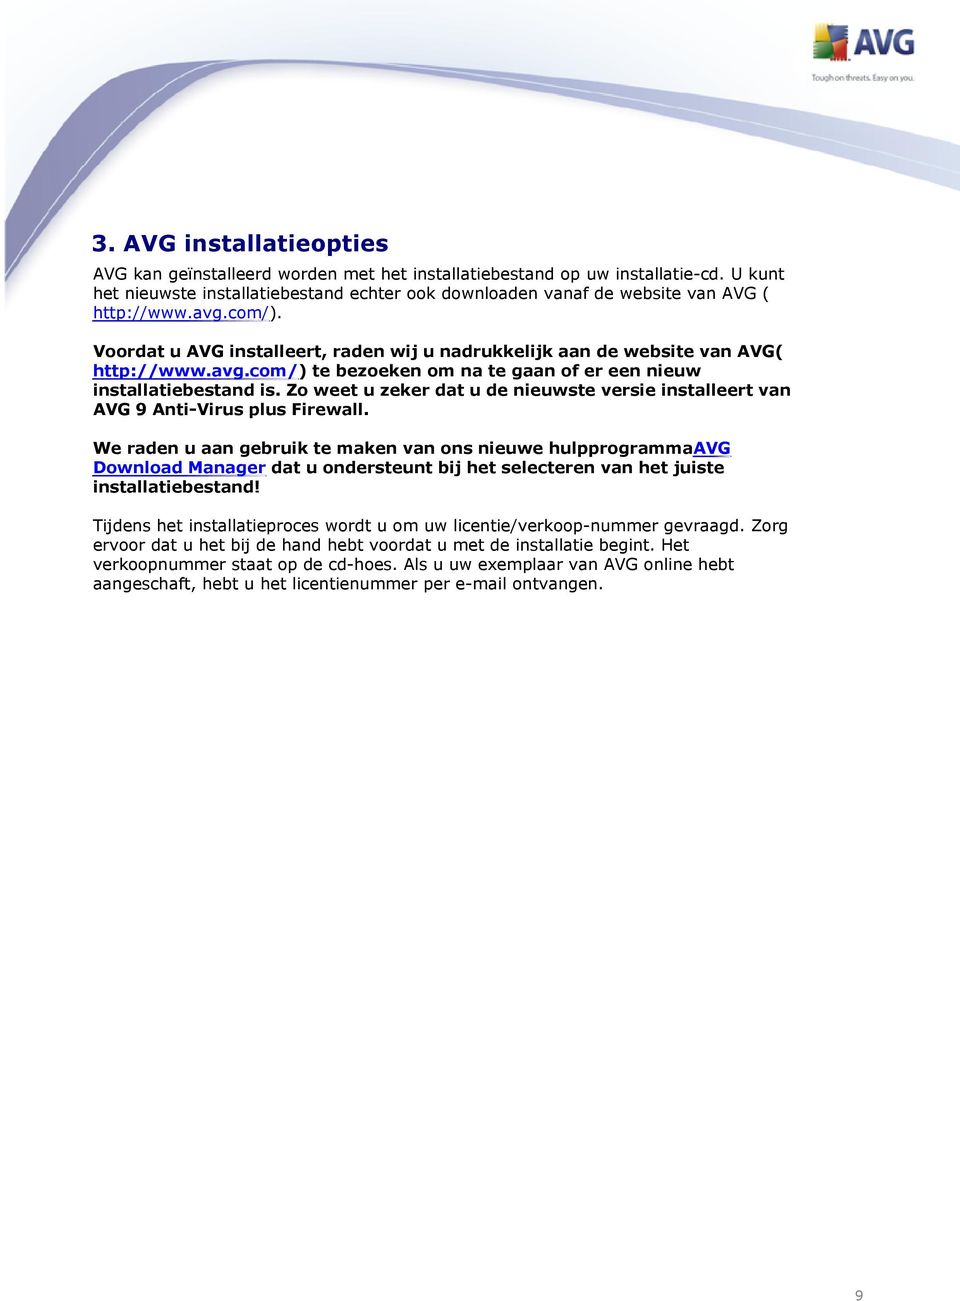 avg.com/) te bezoeken om na te gaan of er een nieuw installatiebestand is. Zo weet u zeker dat u de nieuwste versie installeert van AVG 9 Anti-Virus plus Firewall.